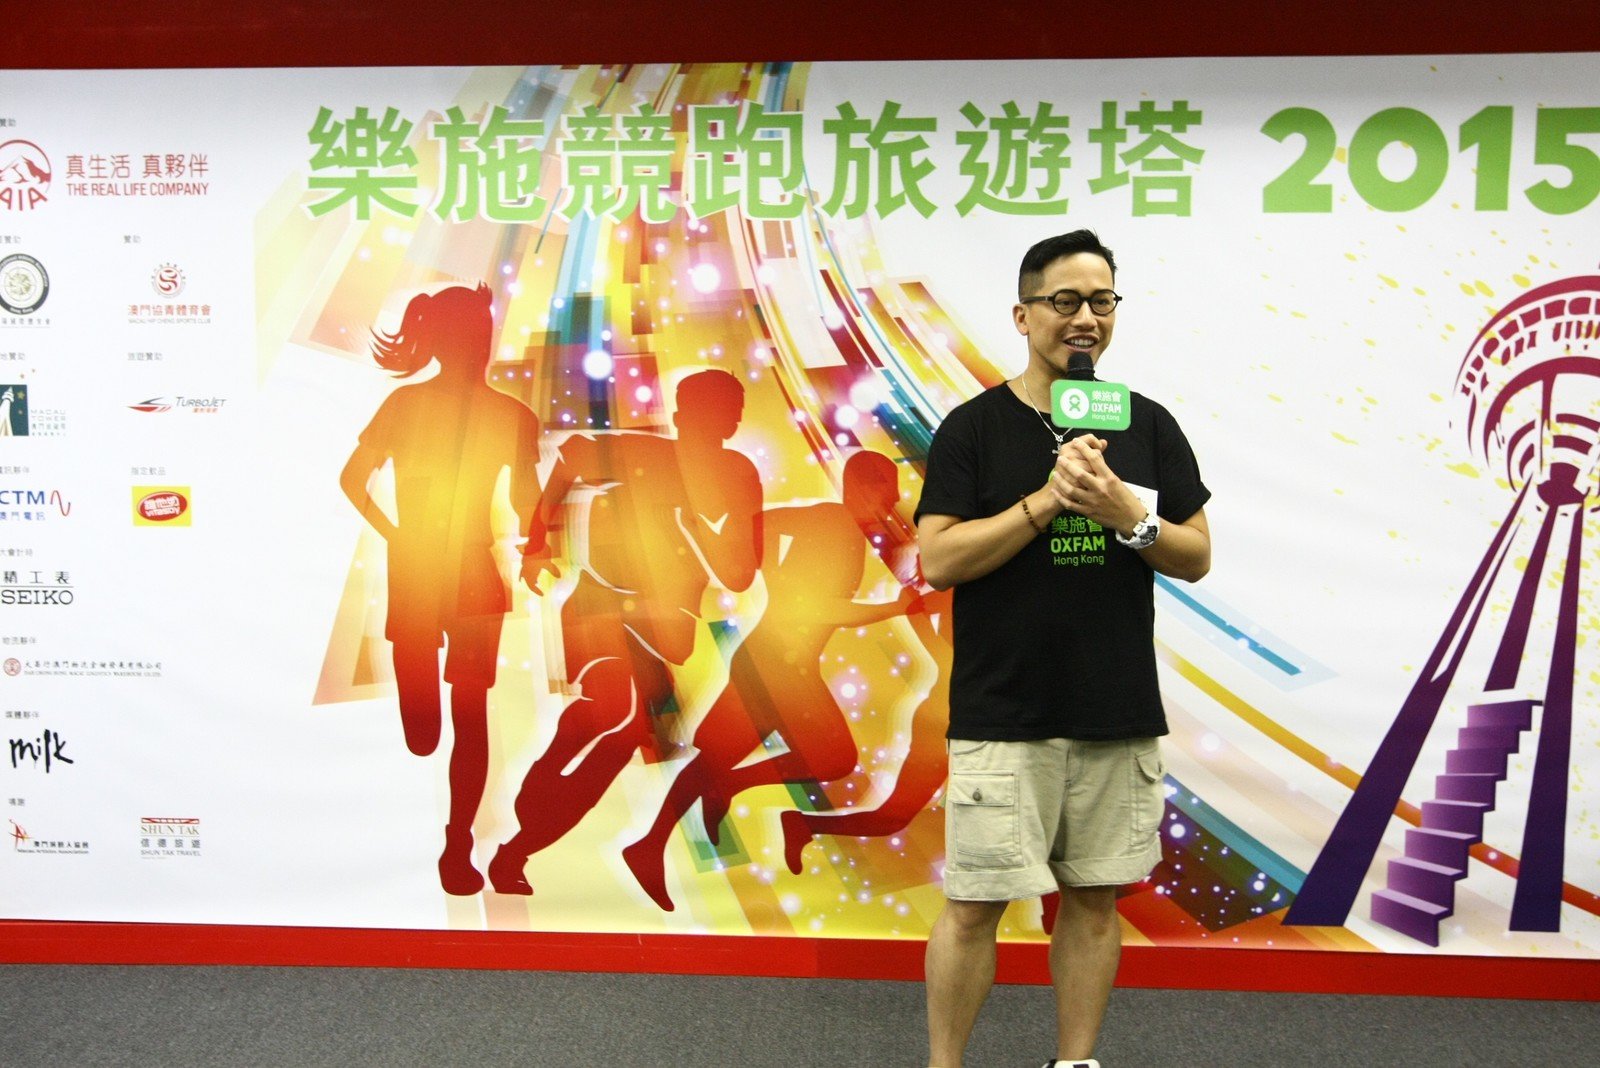 记者会上，乐施大使小肥呼吁公众踊跃参加「乐施竞跑旅游塔」2015。